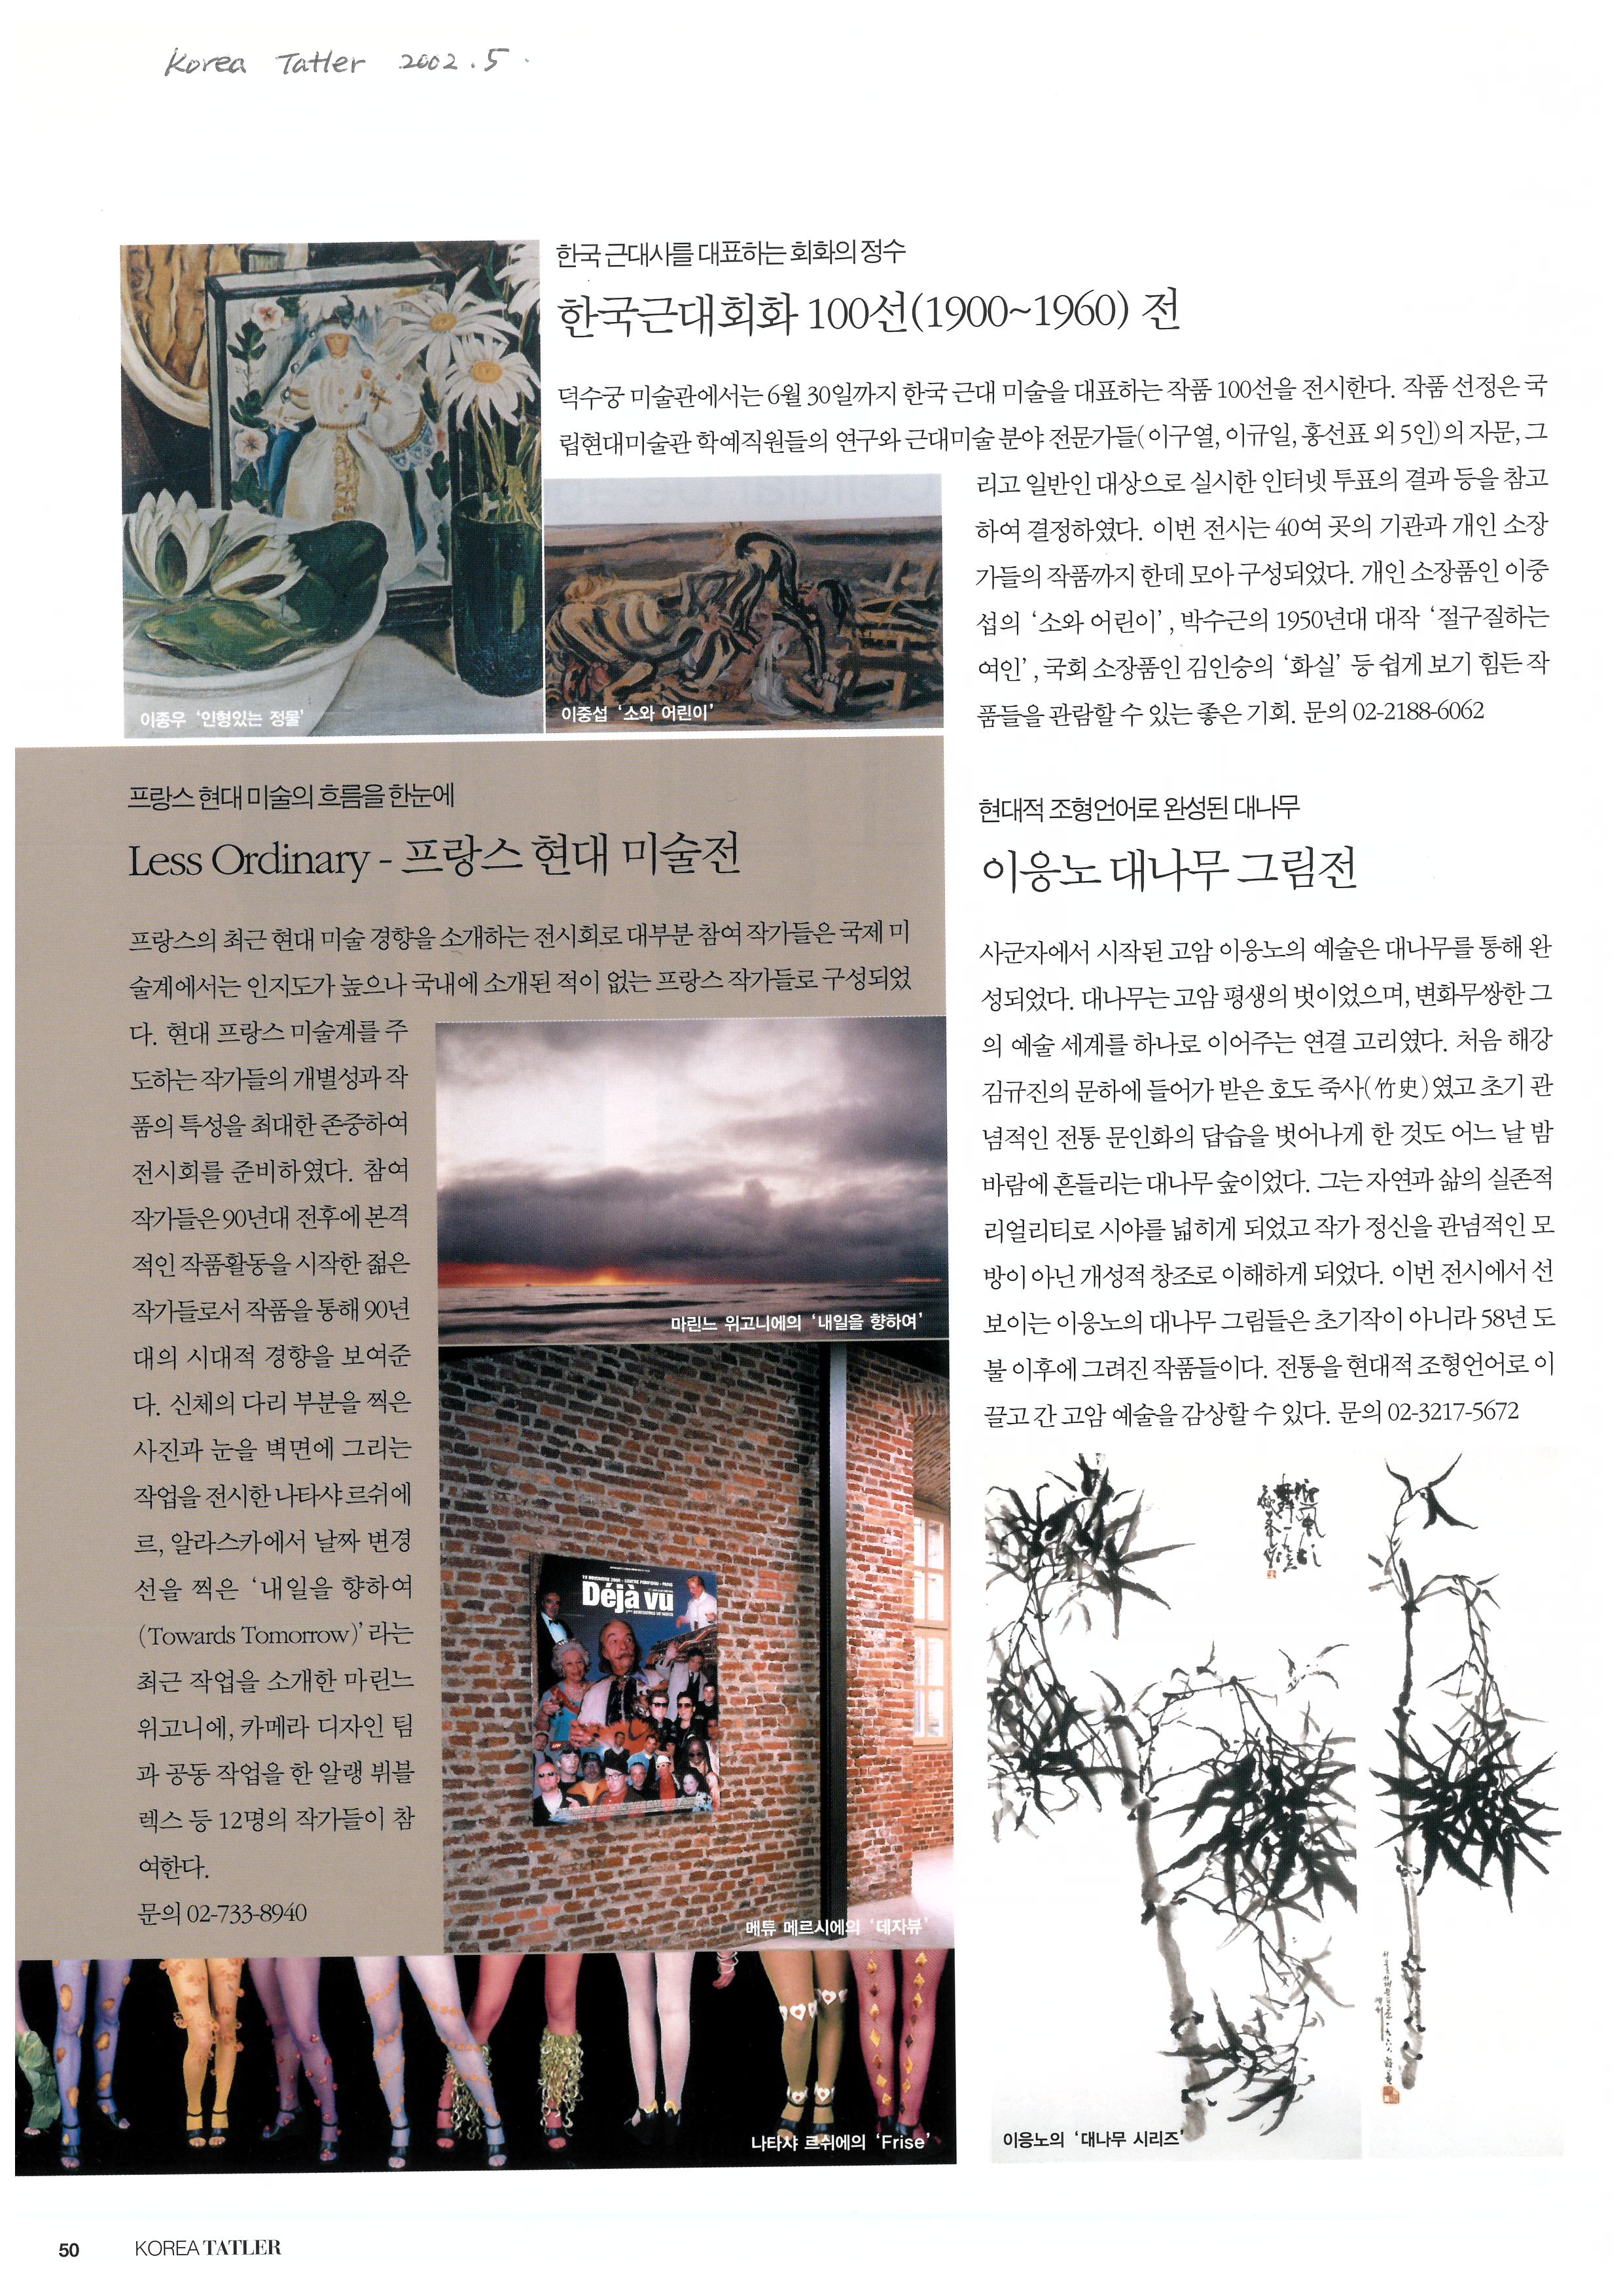  「이응노 대나무 그림전」, 『Korea Tatler』 